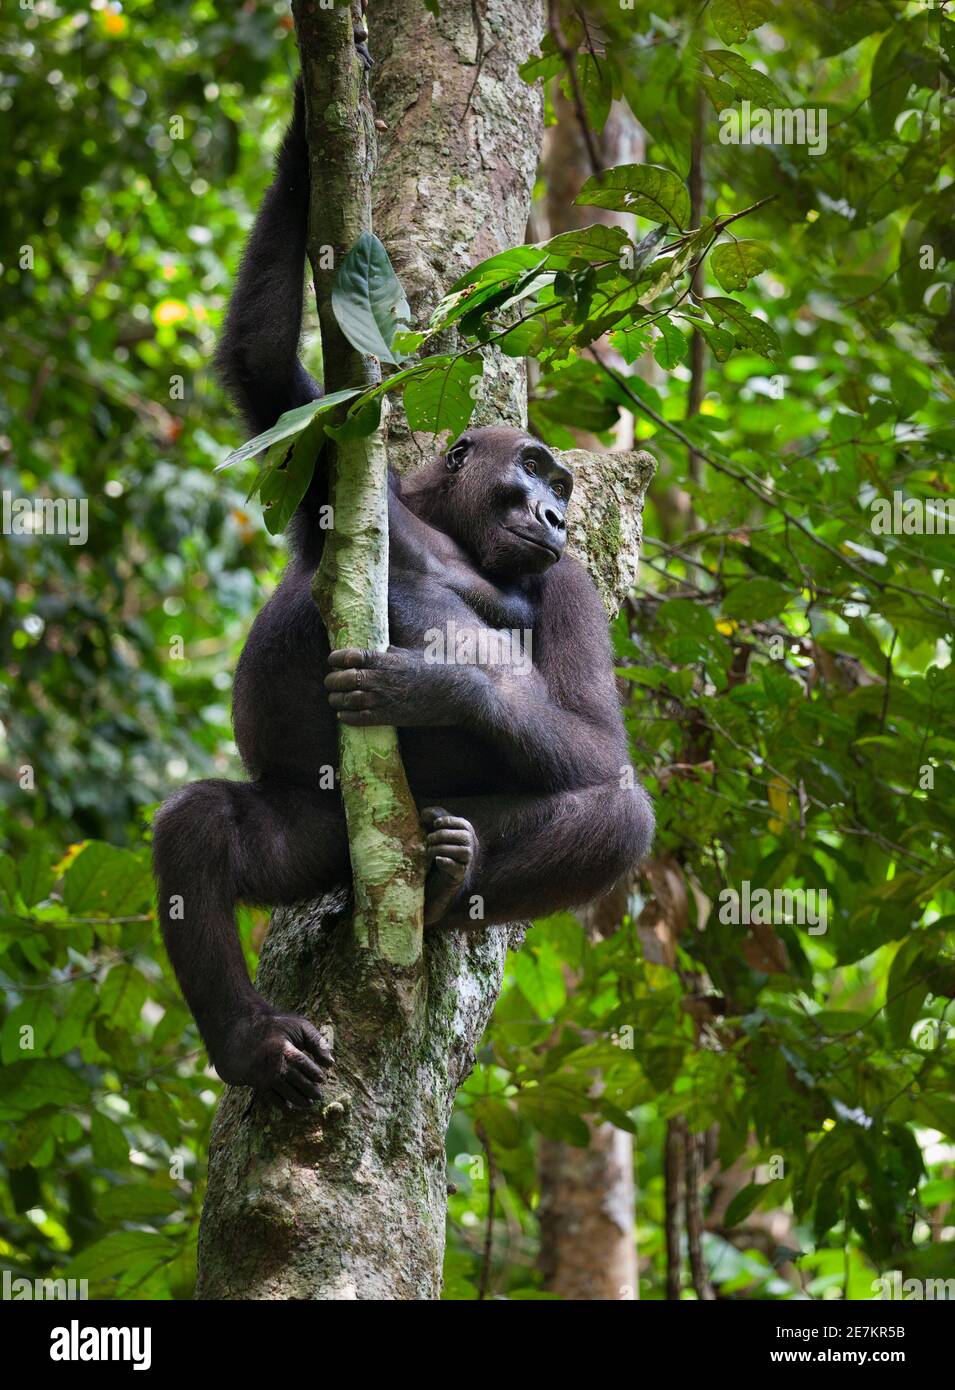 Gorilla (Gorilla gorilla gorilla) dans les arbres, Parc national de Loango, Gabon, Afrique centrale. En danger critique d'extinction. Banque D'Images